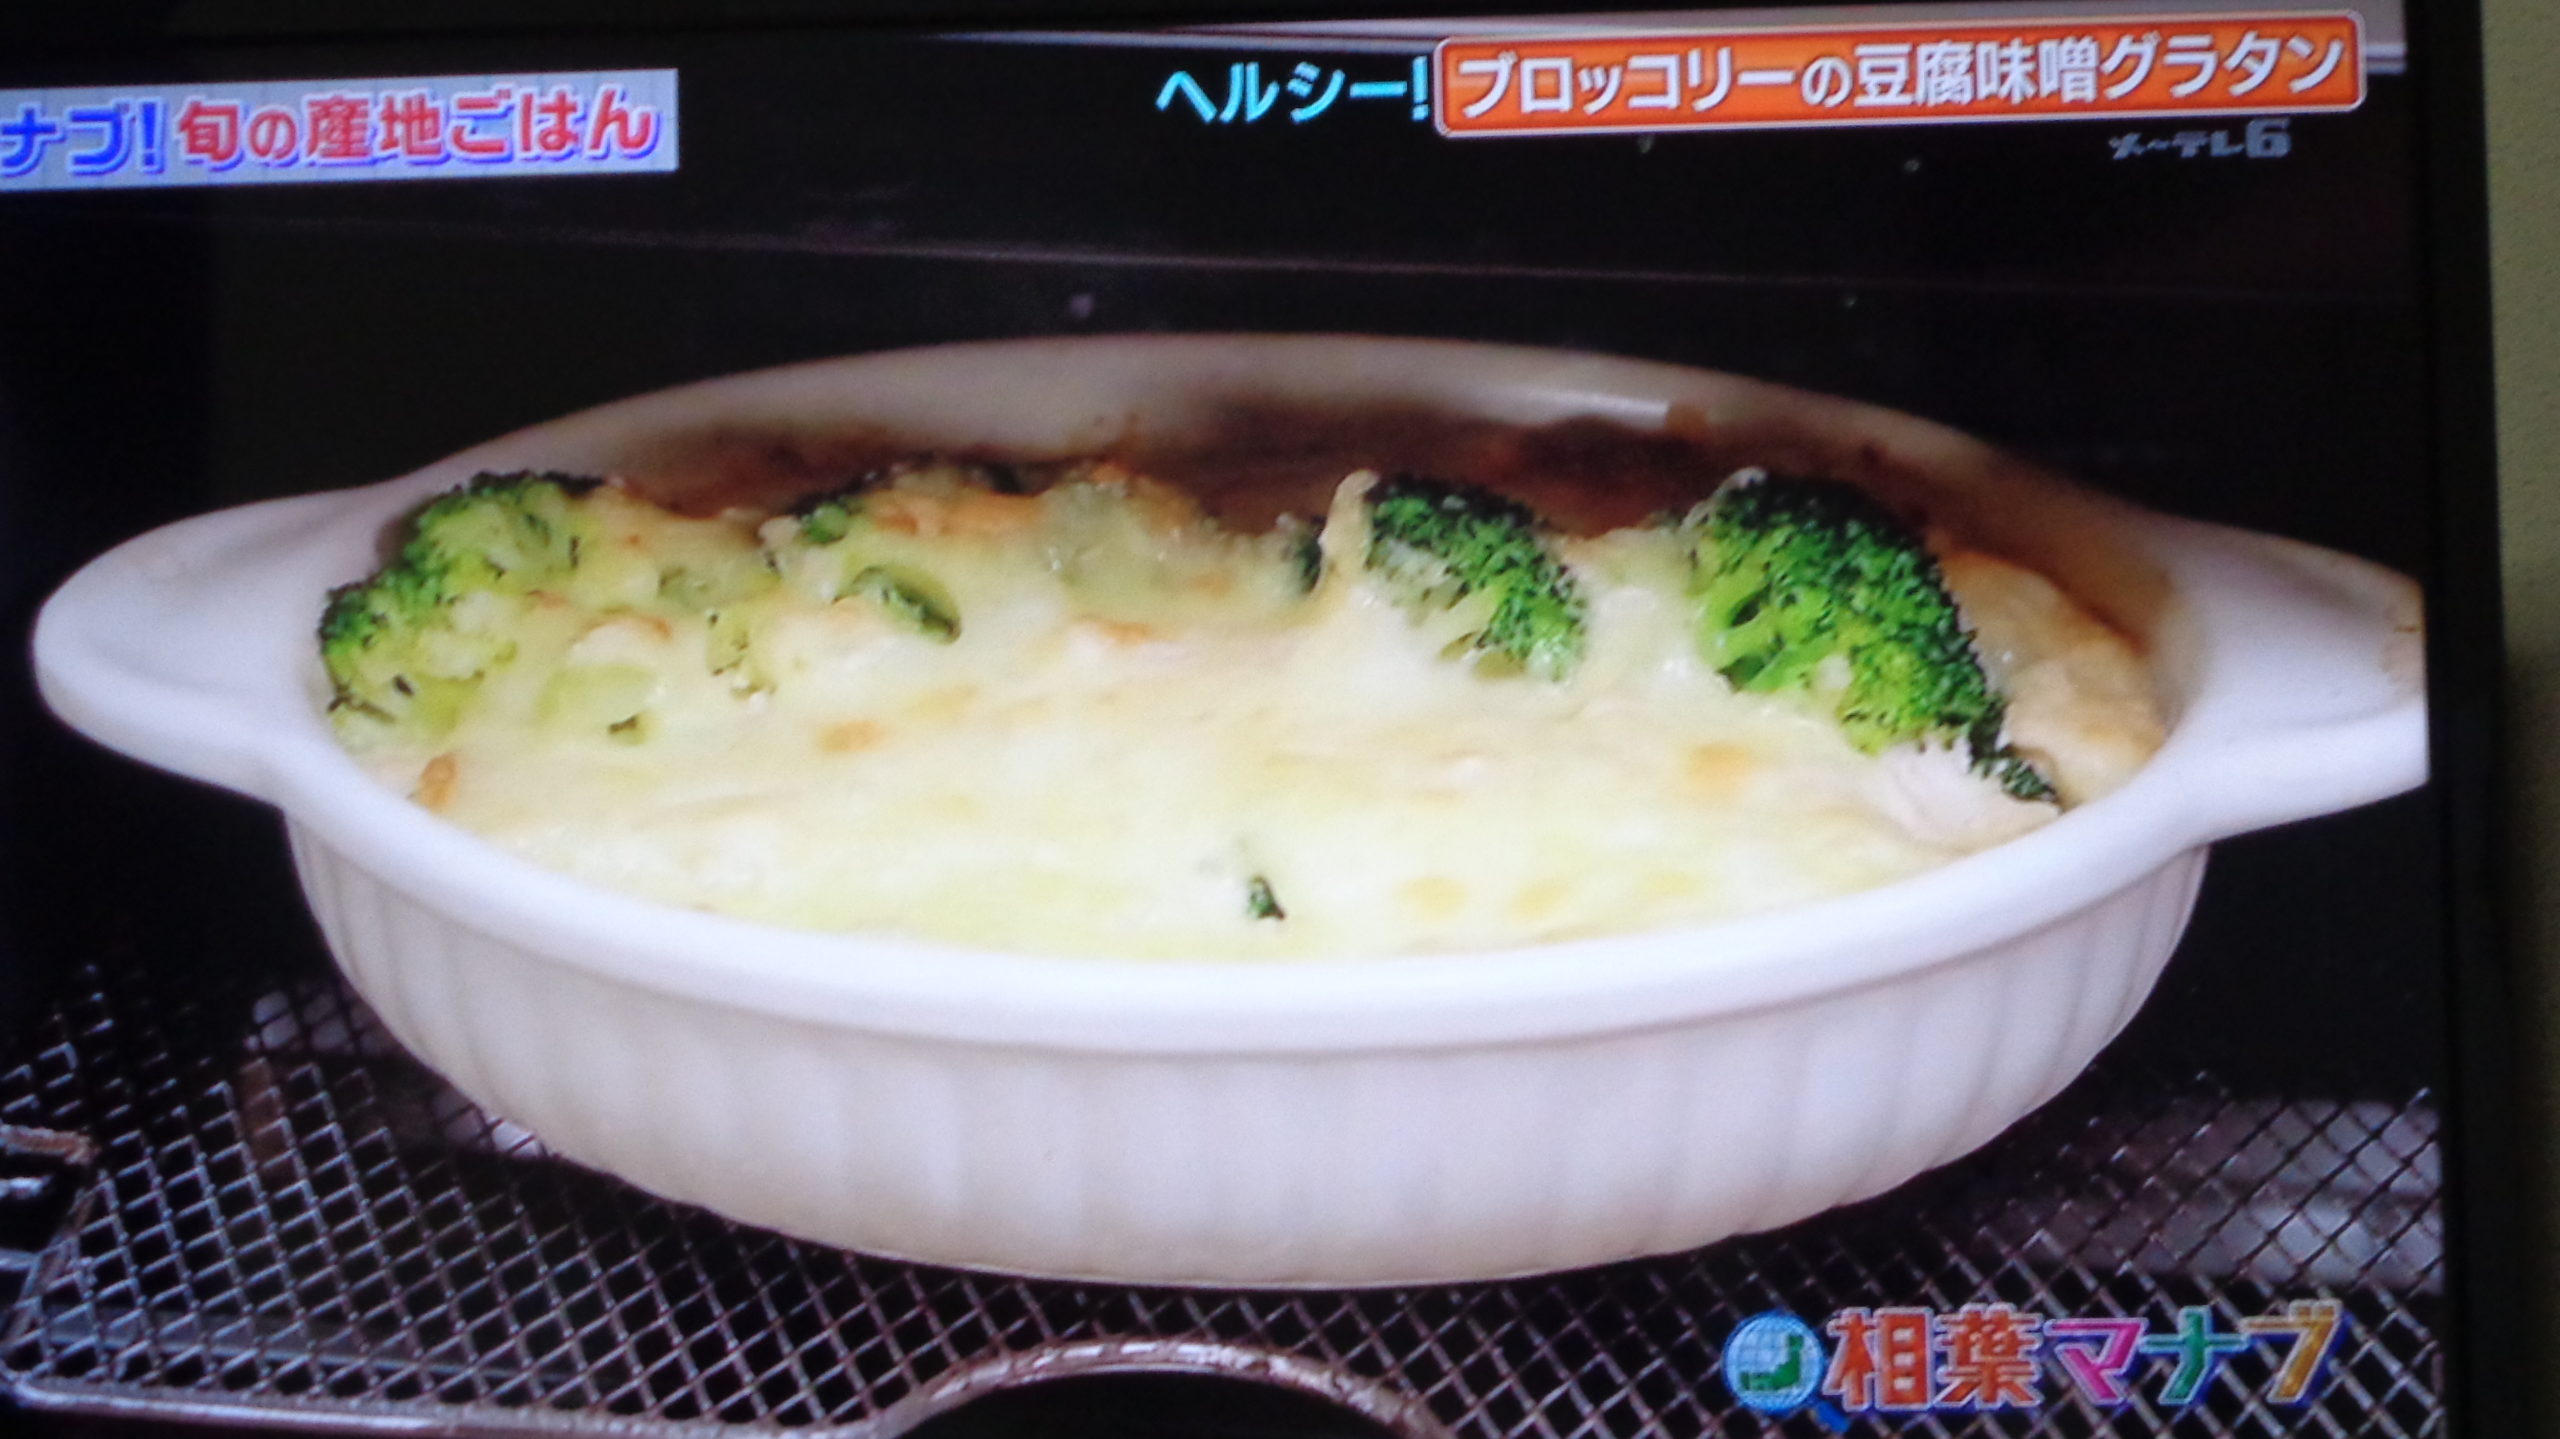 相葉マナブ:ブロッコリーの豆腐味噌グラタンのレシピ！旬の産地ごはん